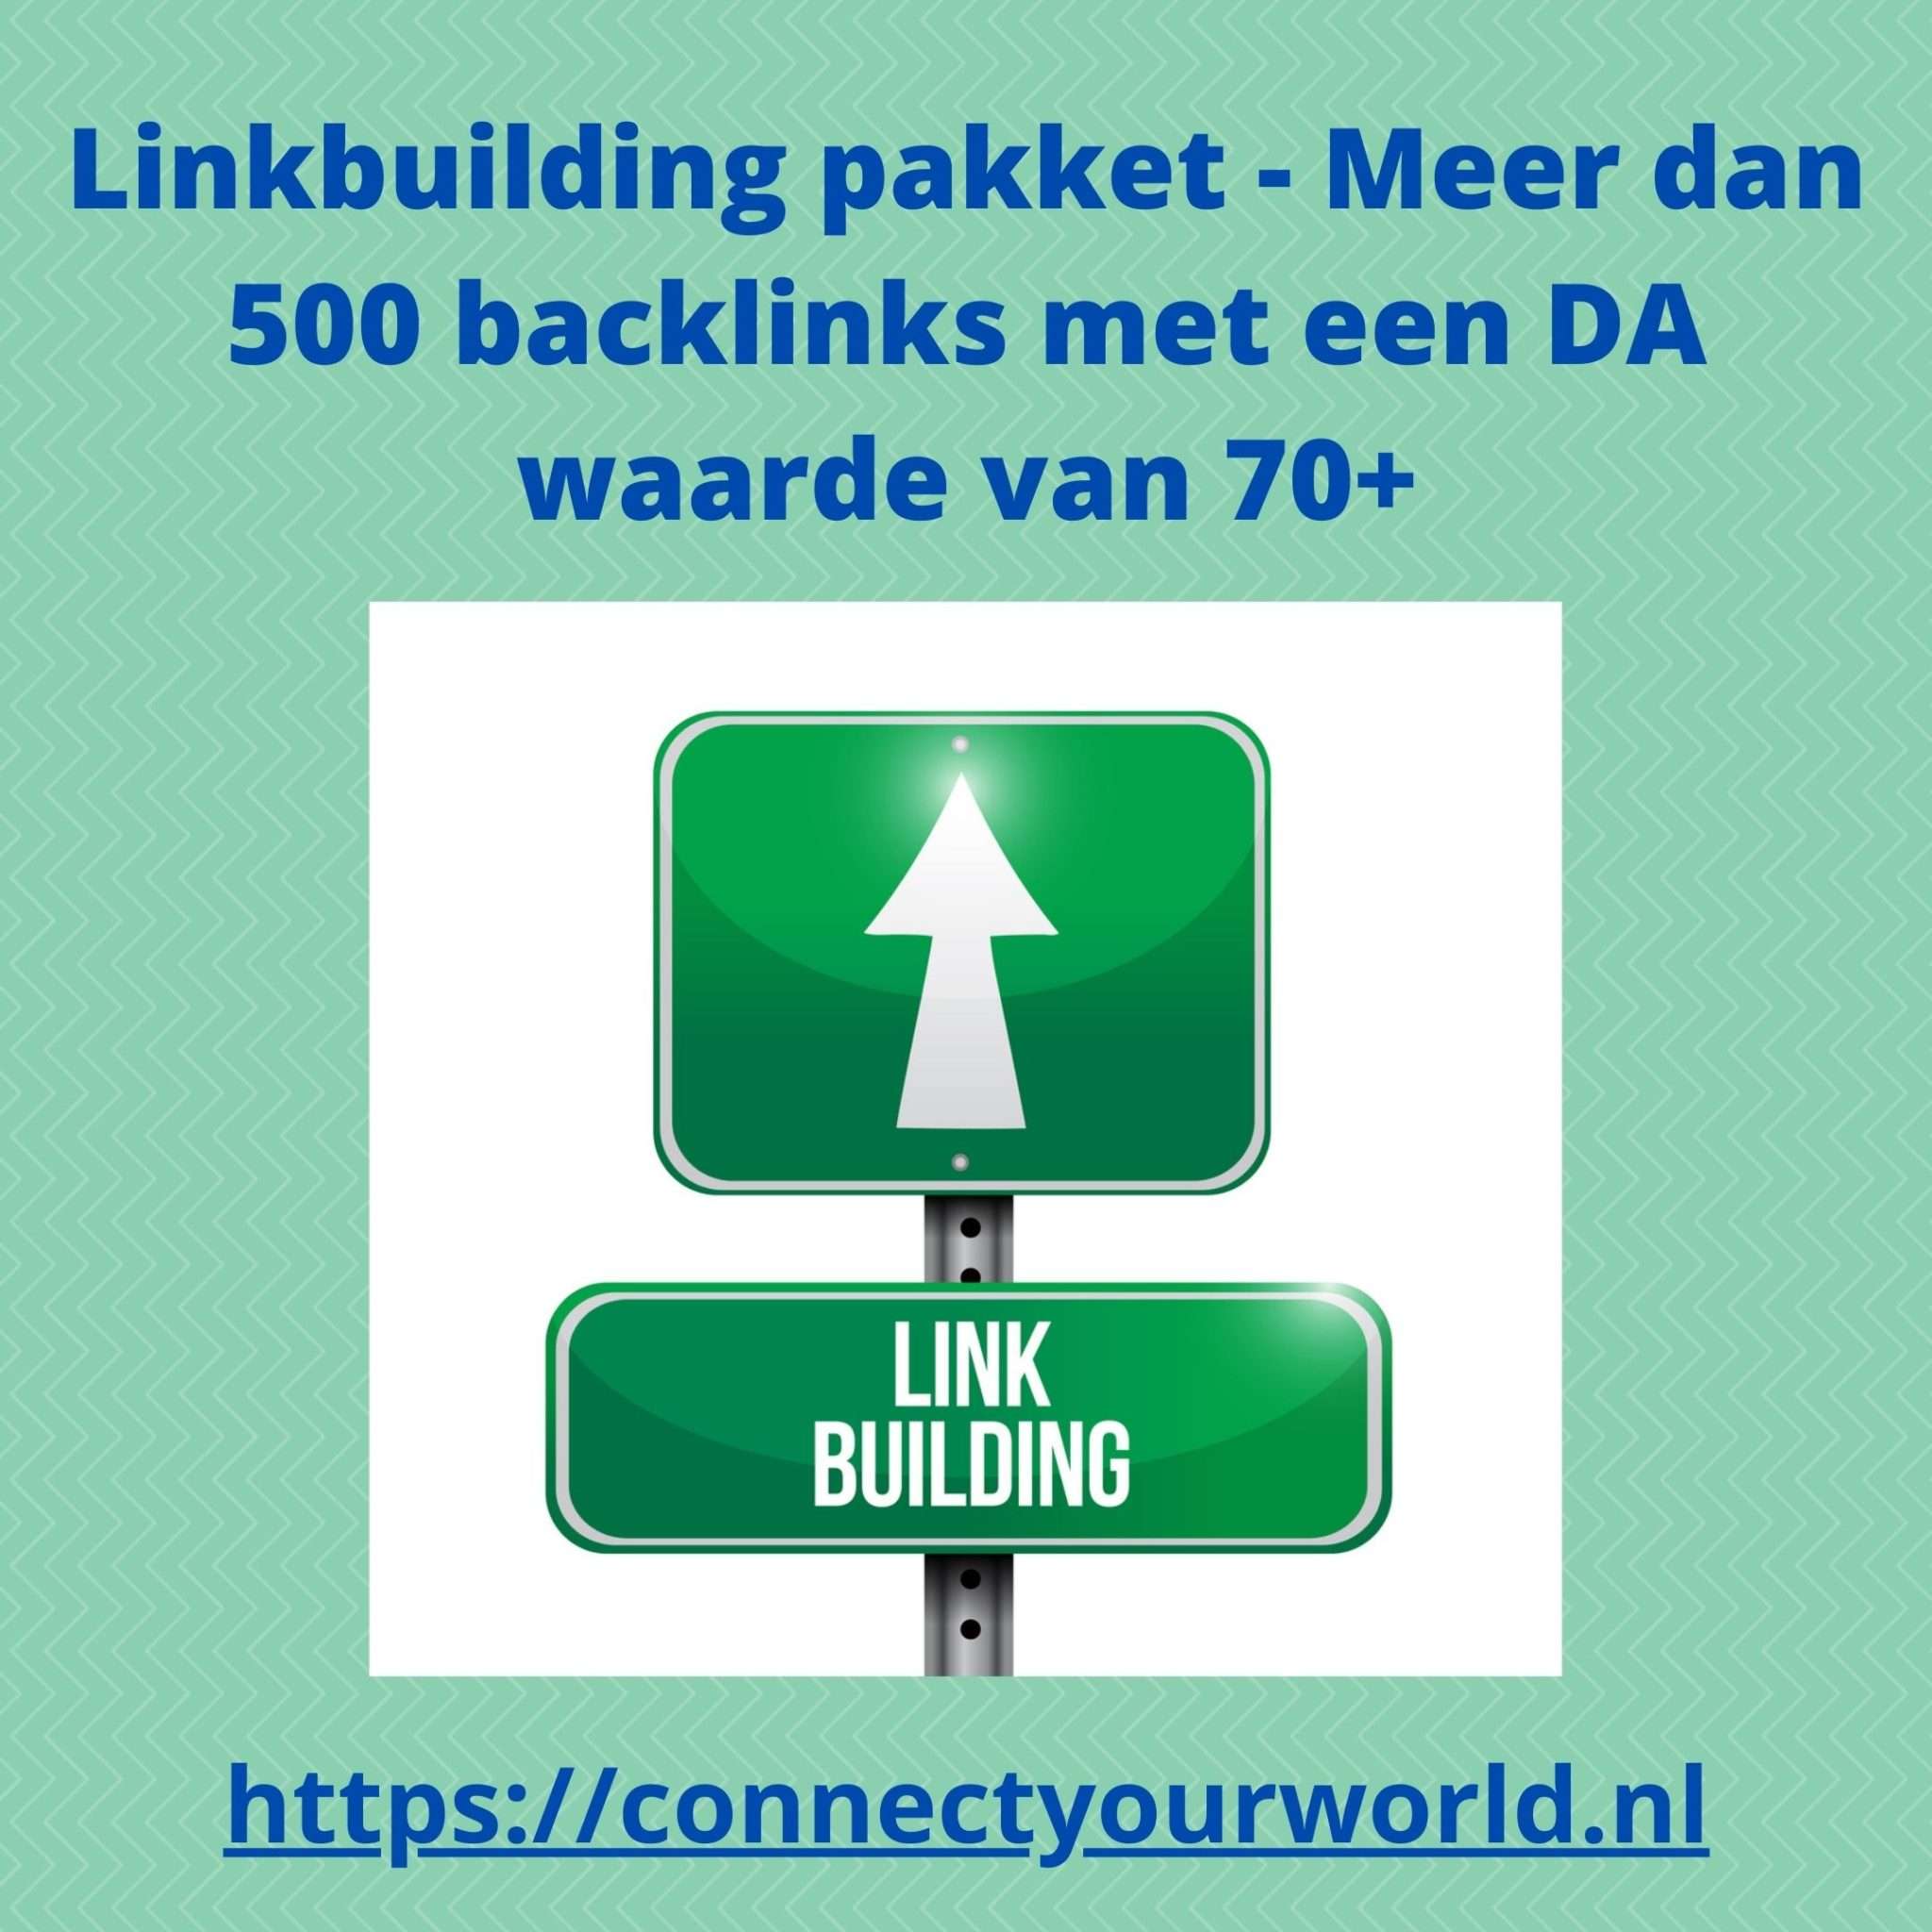 Linkbuilding Pakket - Seomarketingdeals.com